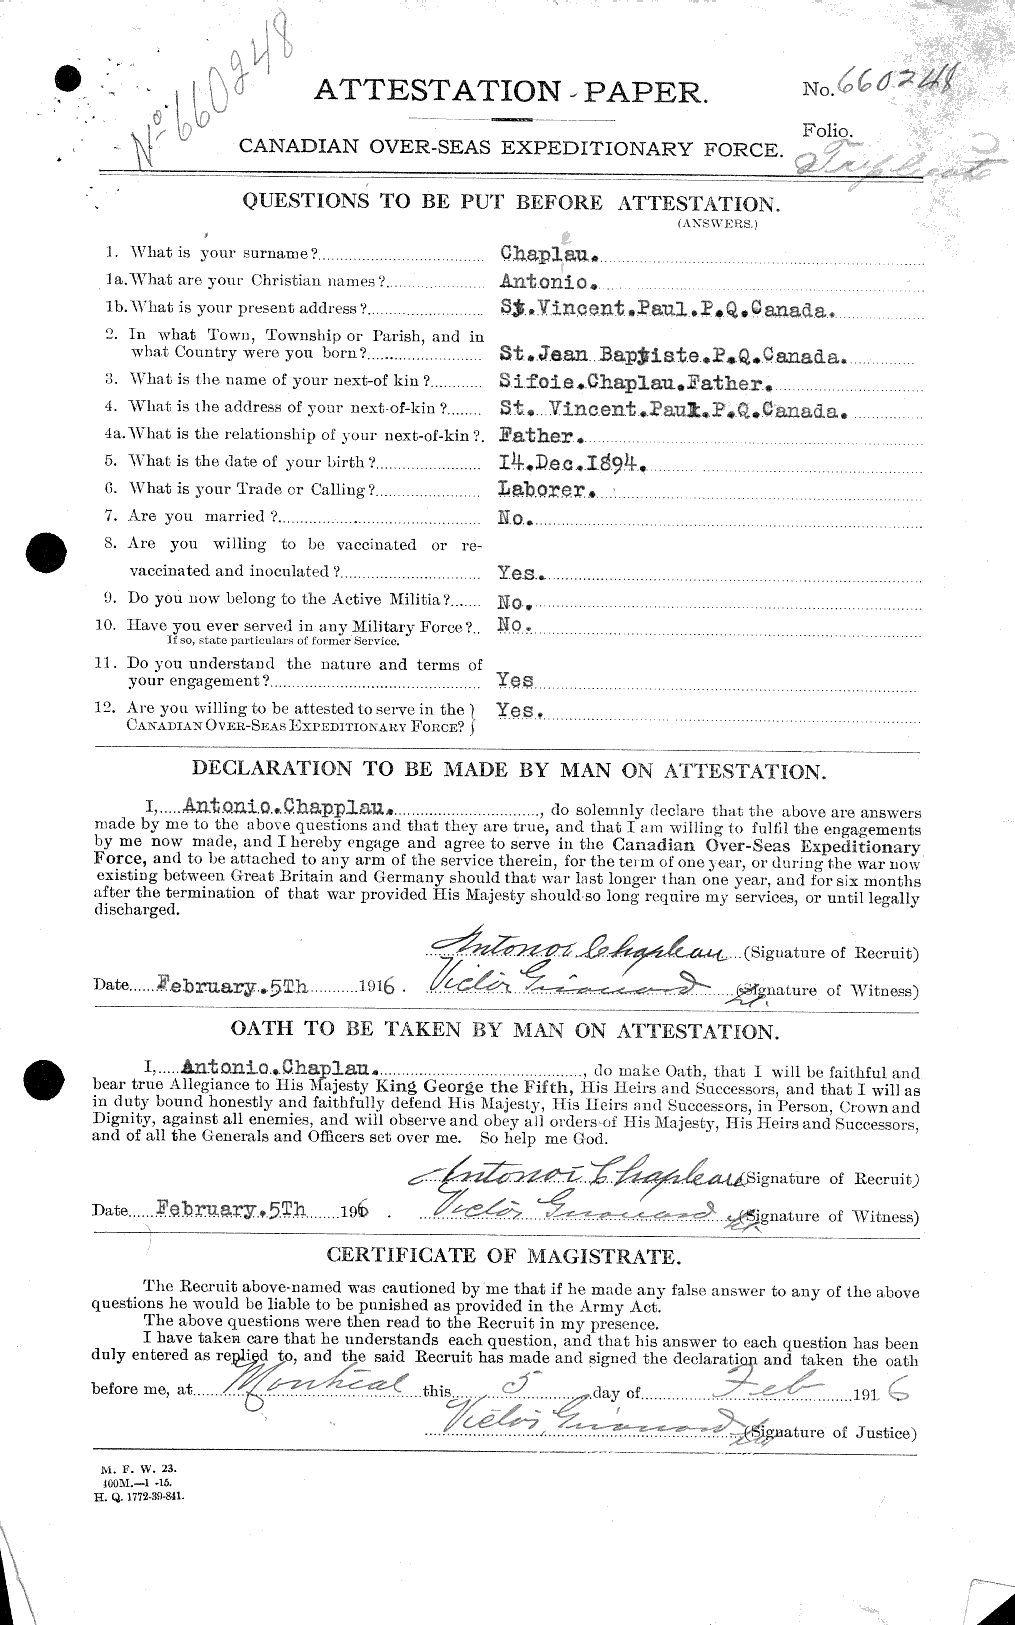 Dossiers du Personnel de la Première Guerre mondiale - CEC 019865c